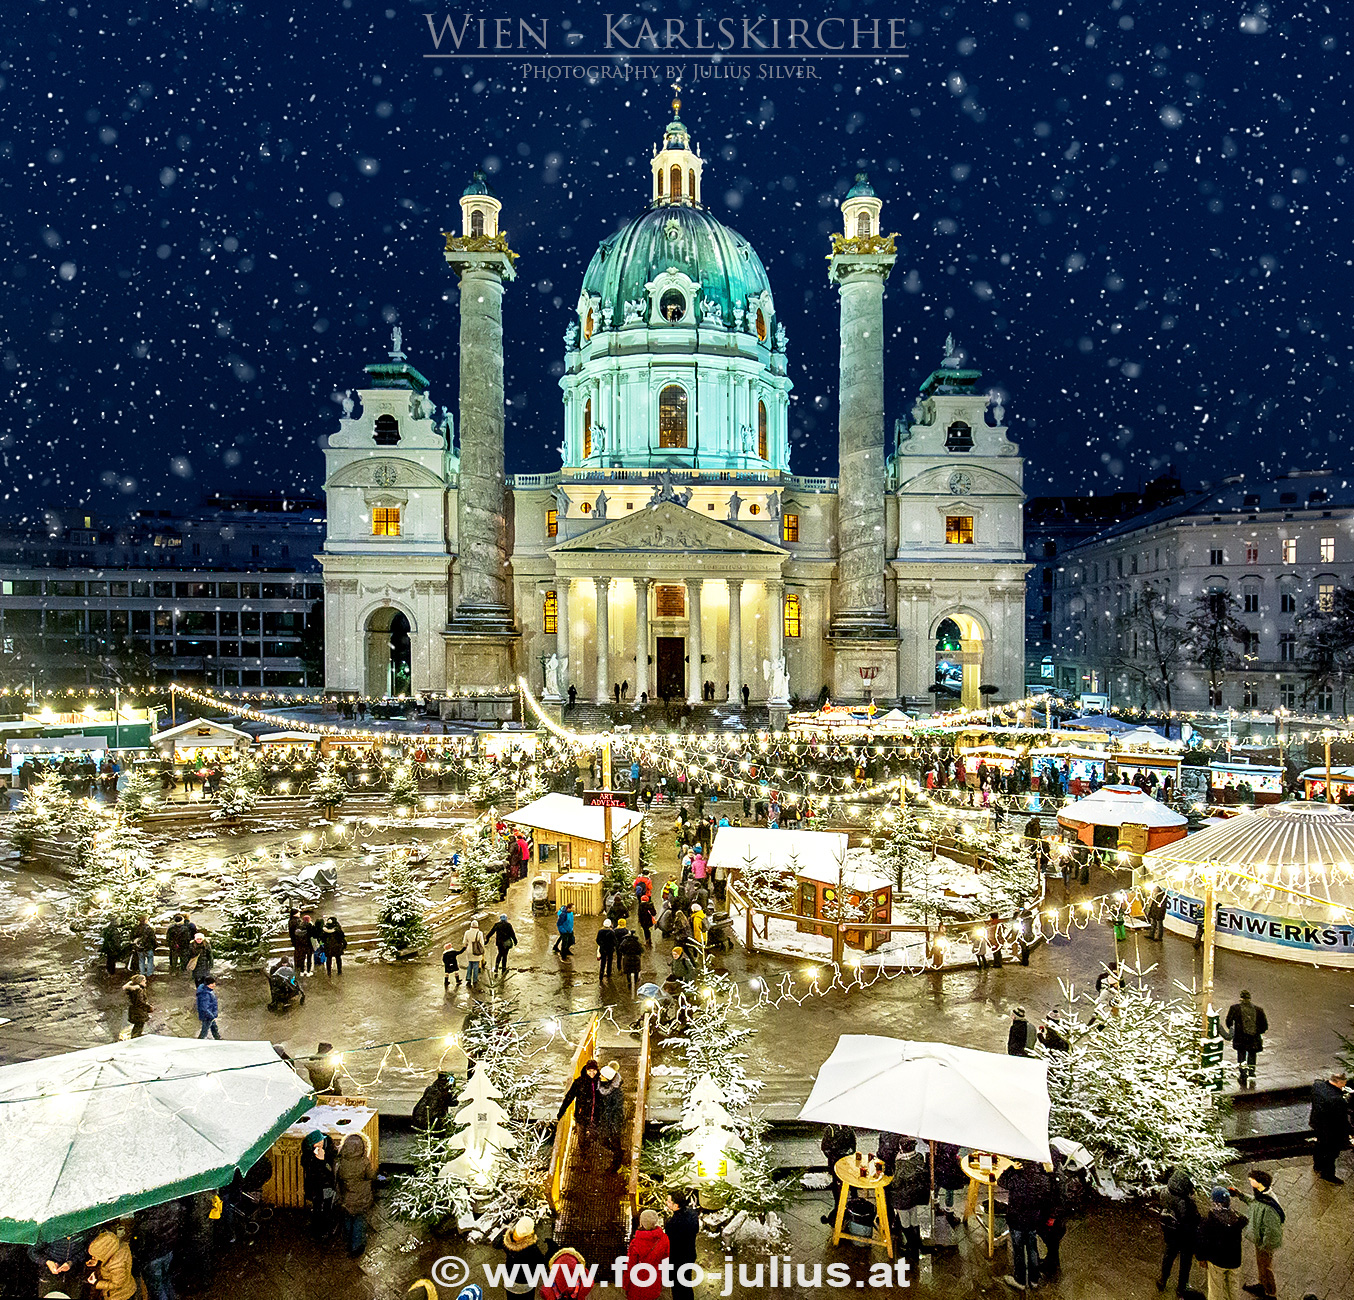 W6958a_Wien_Karlskirche_Weihnachtsmarkt.jpg, 1,2MB